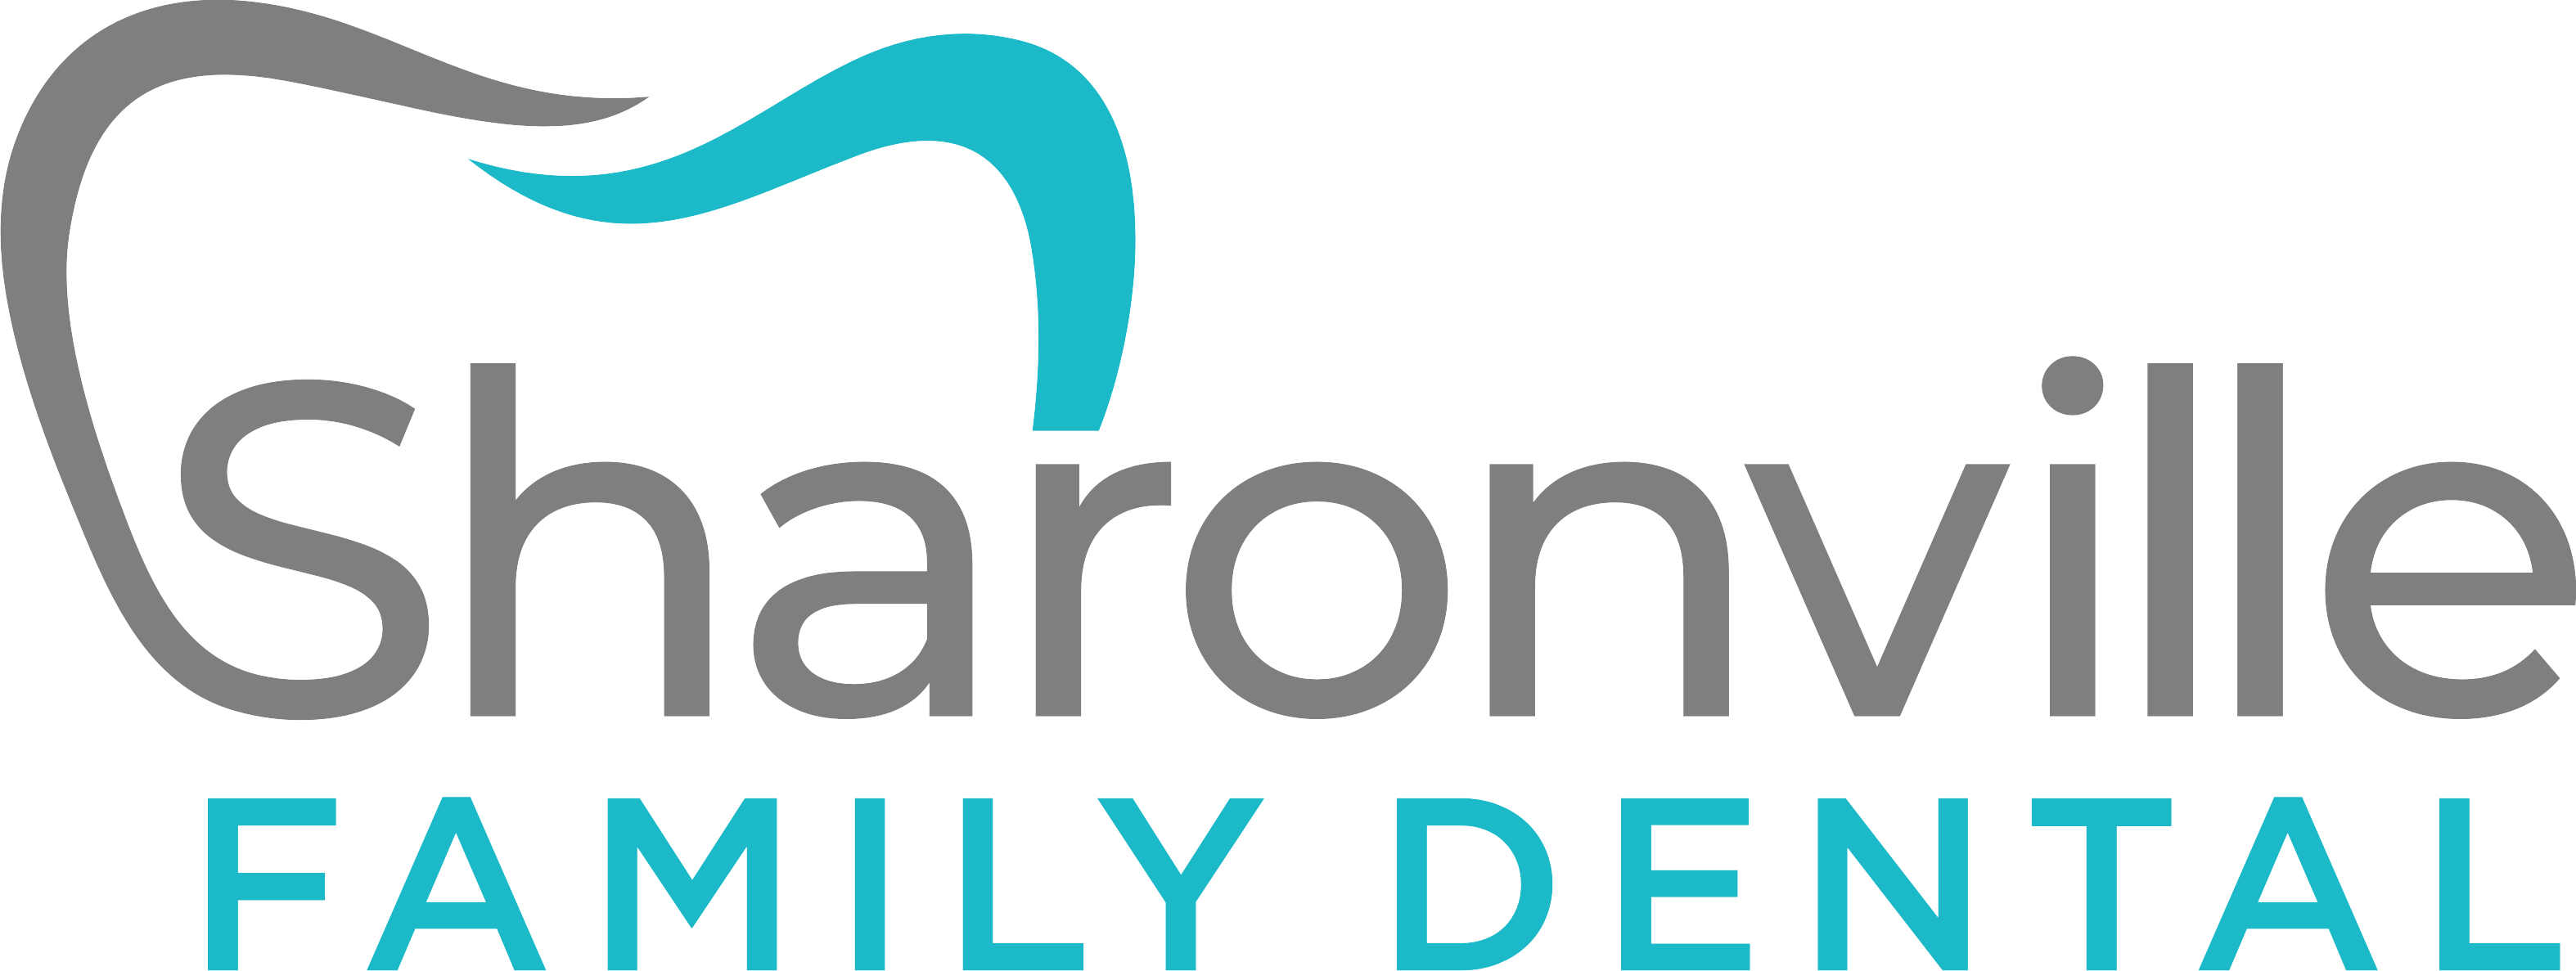 Sharonville Family Dental Logo